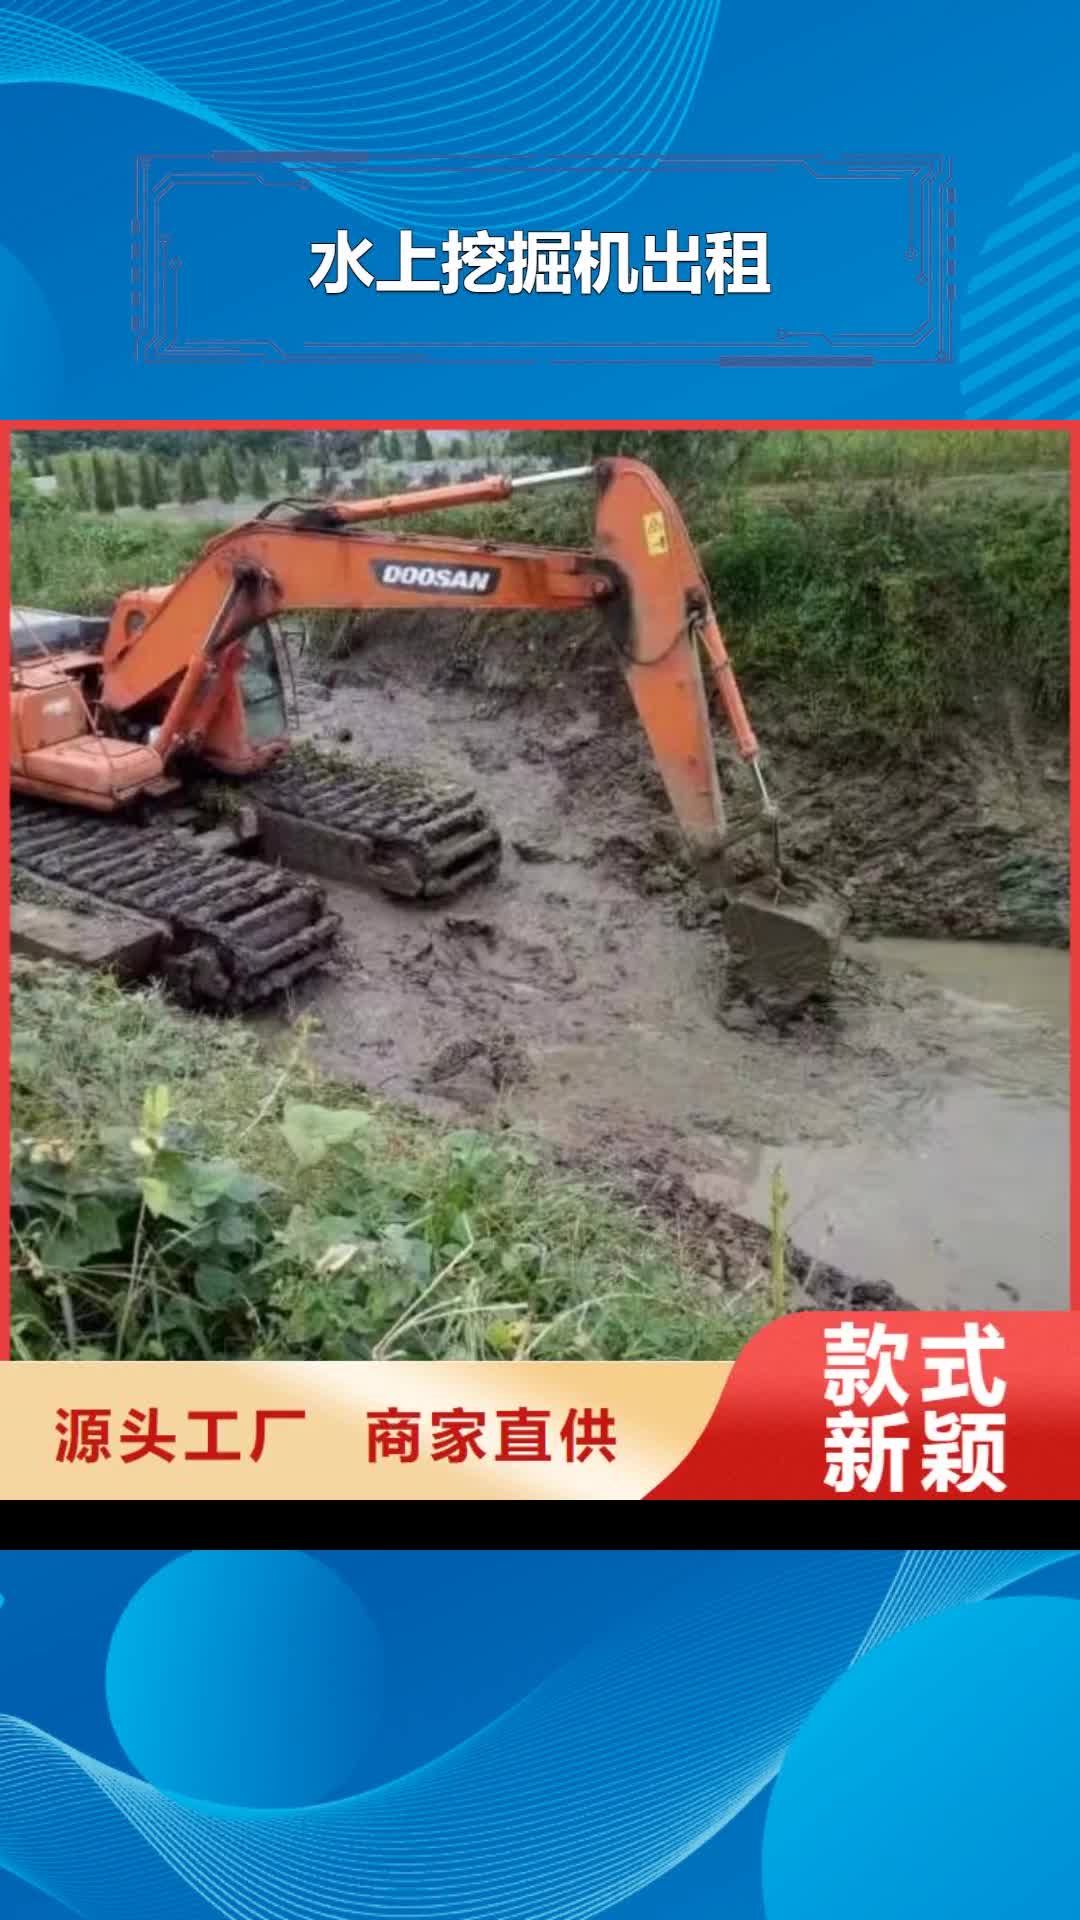 【广元 水上挖掘机出租好产品价格低】